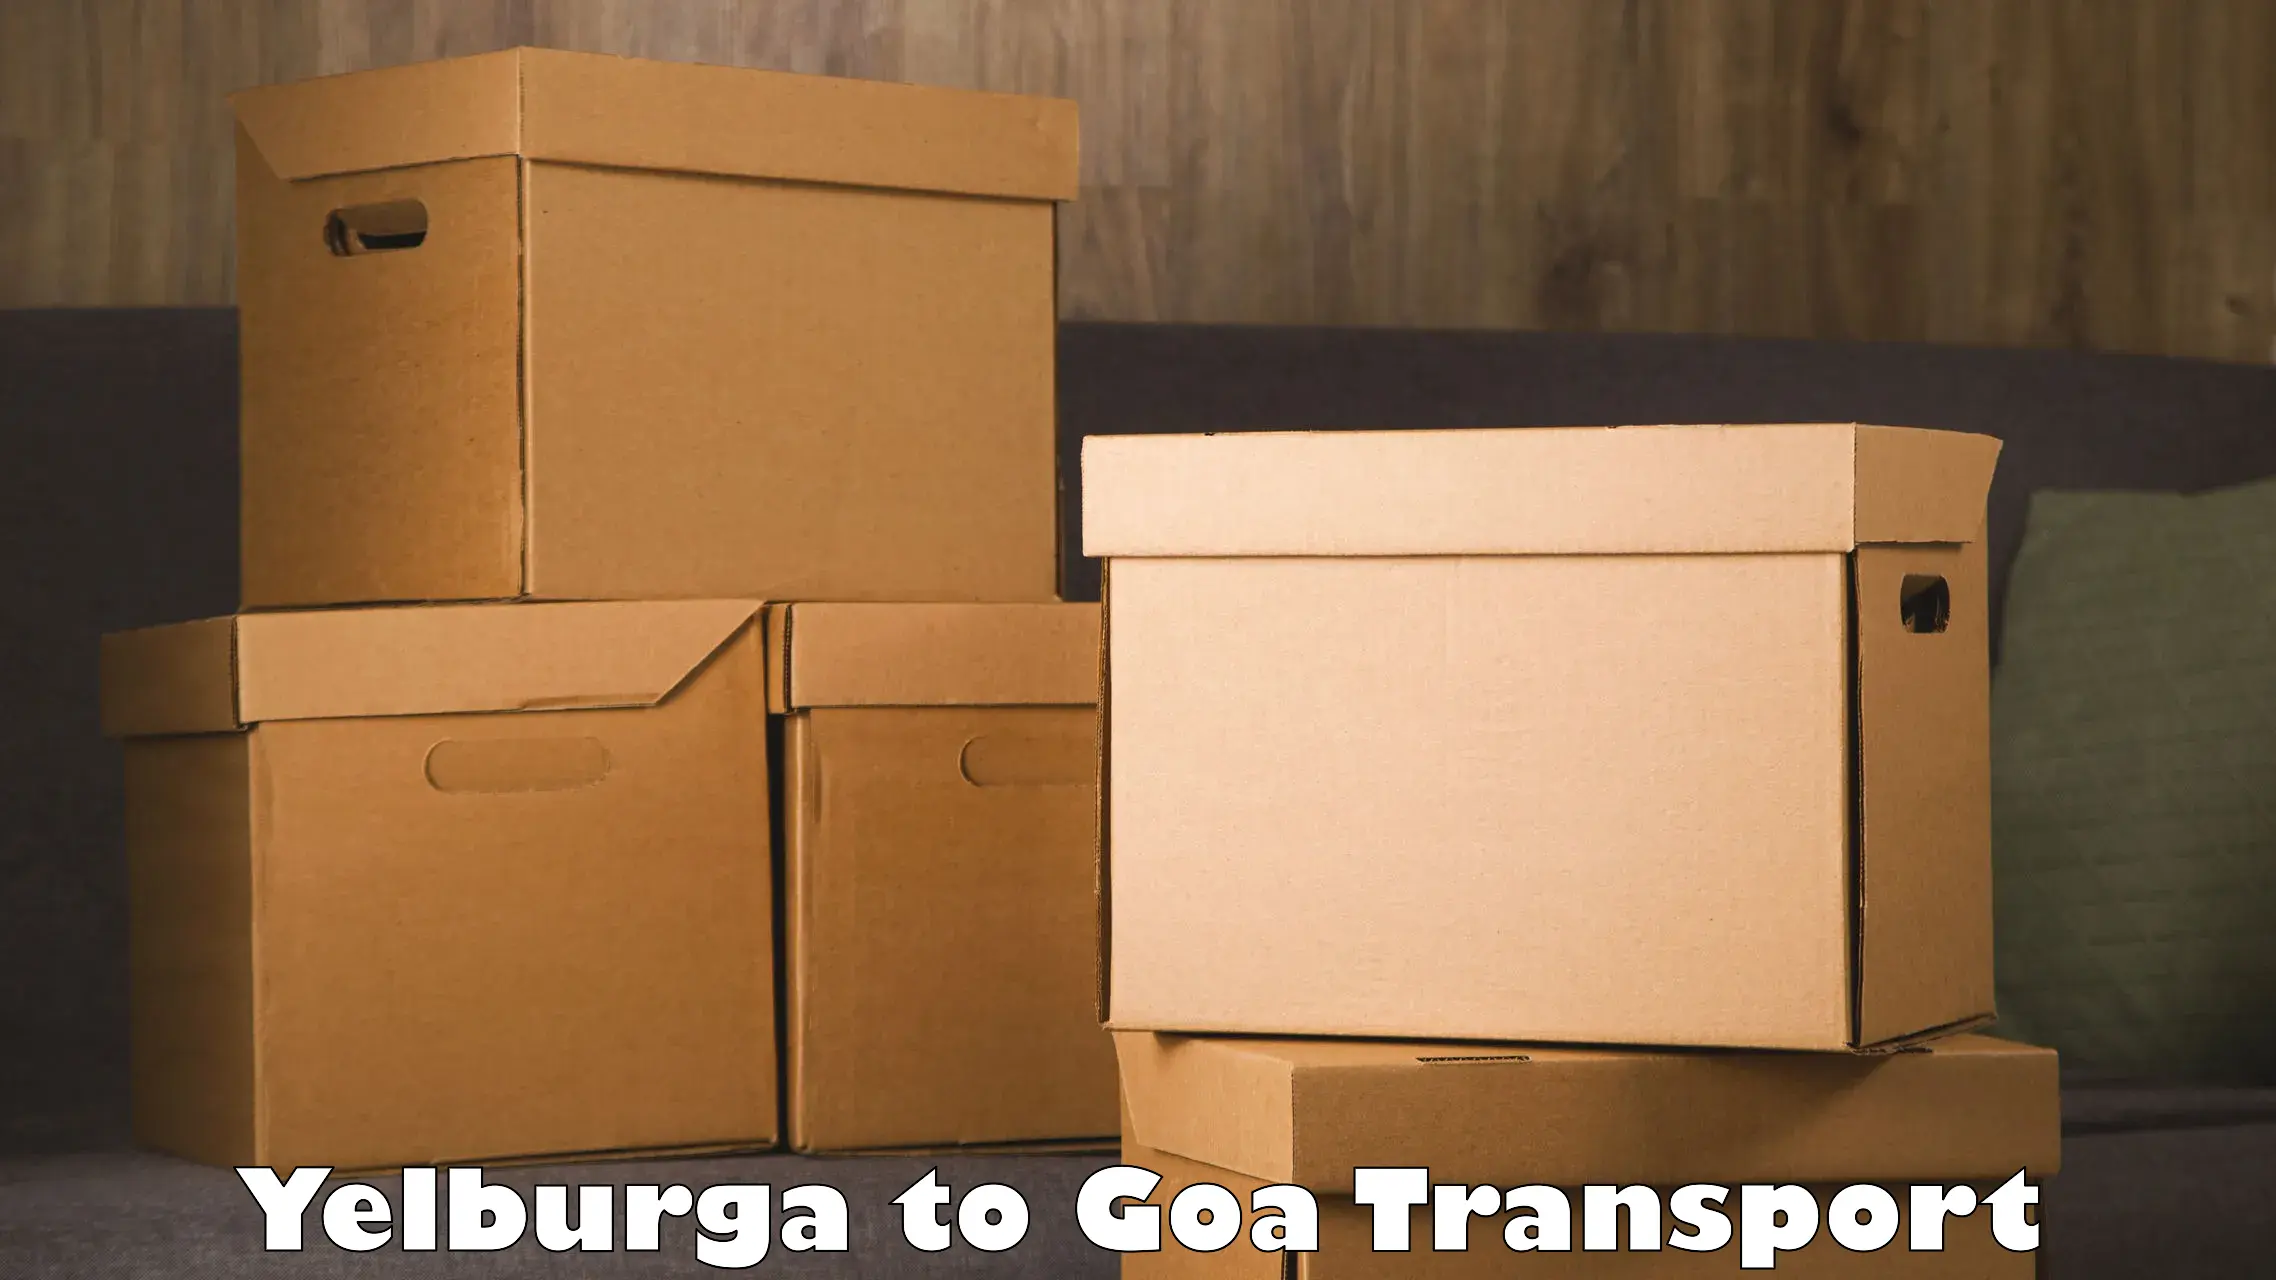 Two wheeler transport services Yelburga to Goa